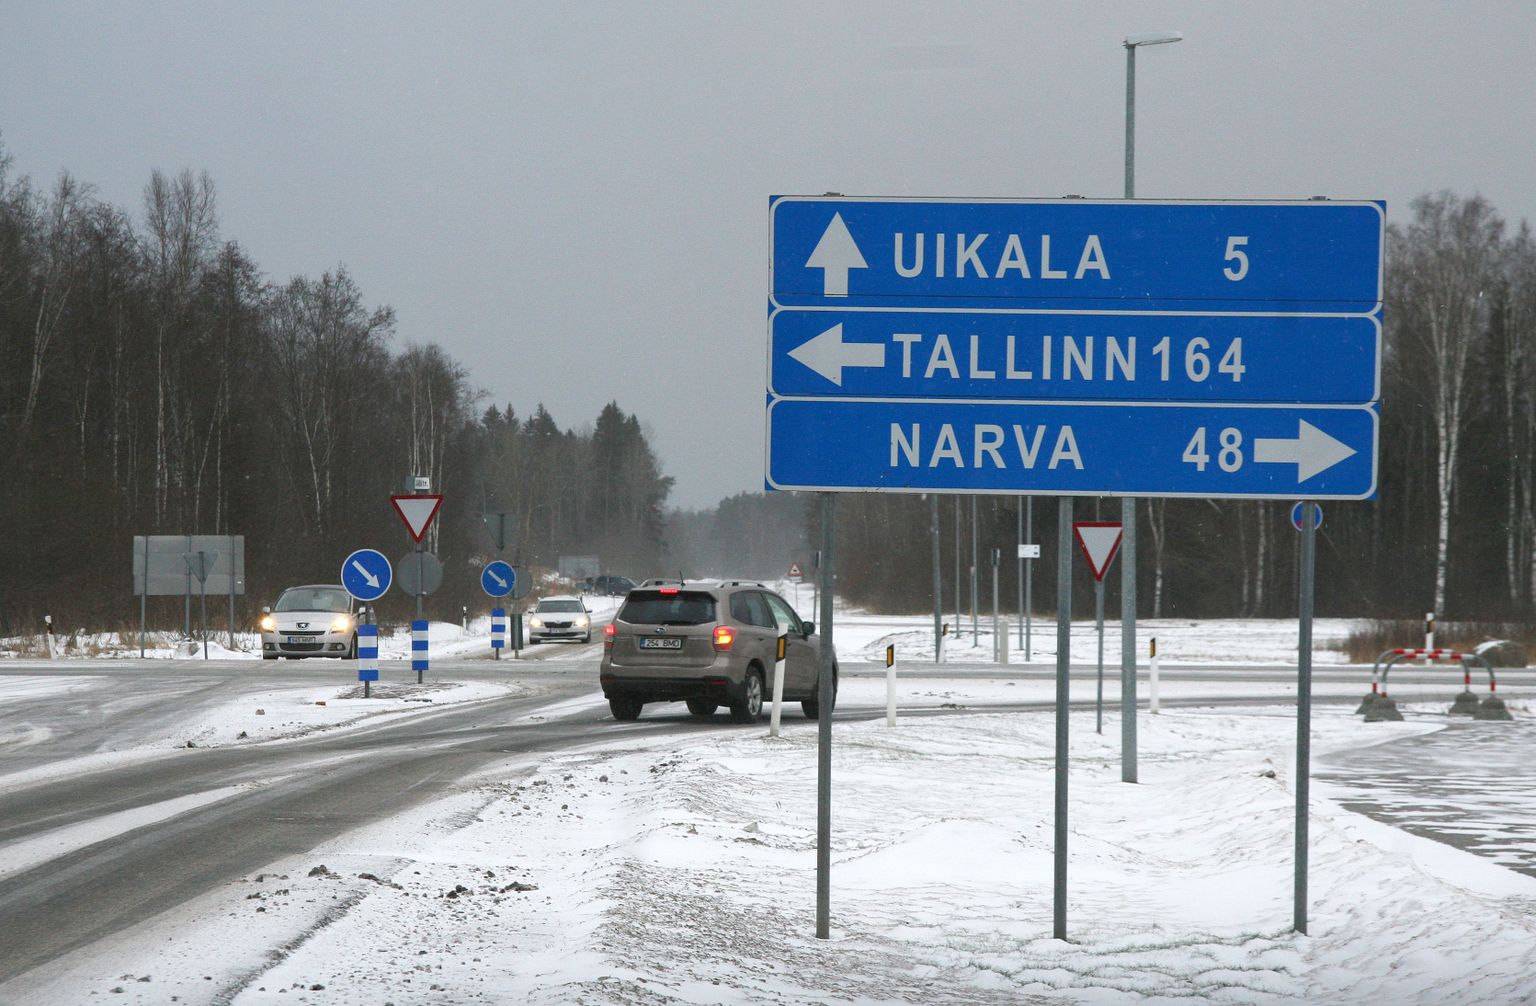 Tallinna-Narva maantee ning Jõhvi-Uikala ristmiku ohutus jalakäijatele on ennegi arutelusid põhjustanud. Nüüd, kui planeerimisel on tuhanded uued töökohad Jõhvi põhjaossa jäävas äri- ja logistikapargis, on tõusnud vaidlus selle üle, kas ja kes peaks rajama tulevastele töötajatele ohutu maanteeületuskoha.